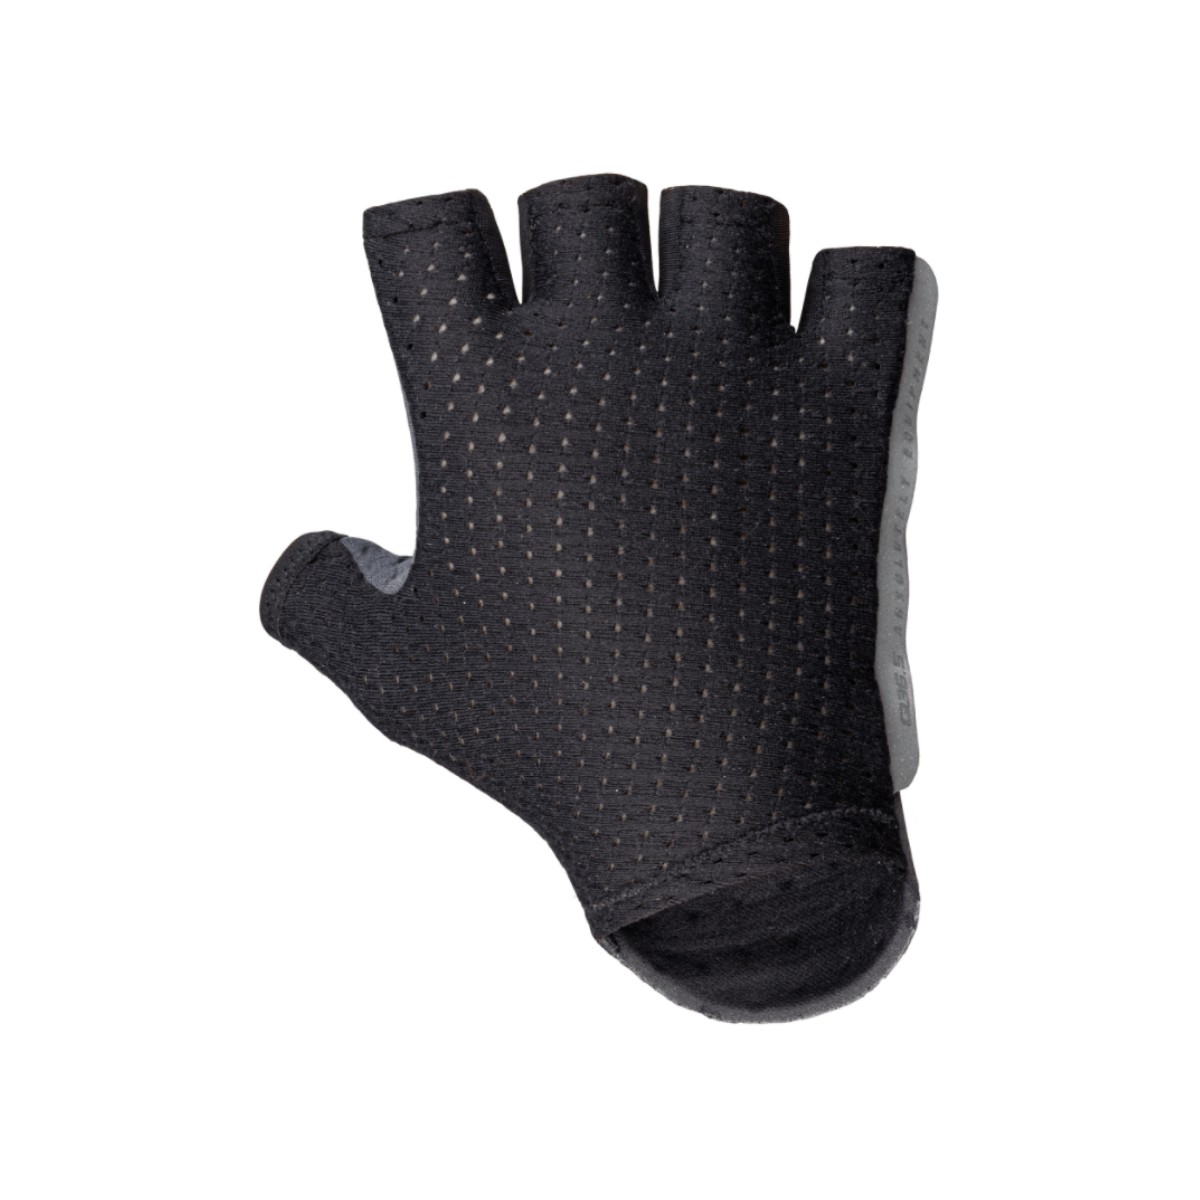 Gloves Q36.5 Unique Black, Size M